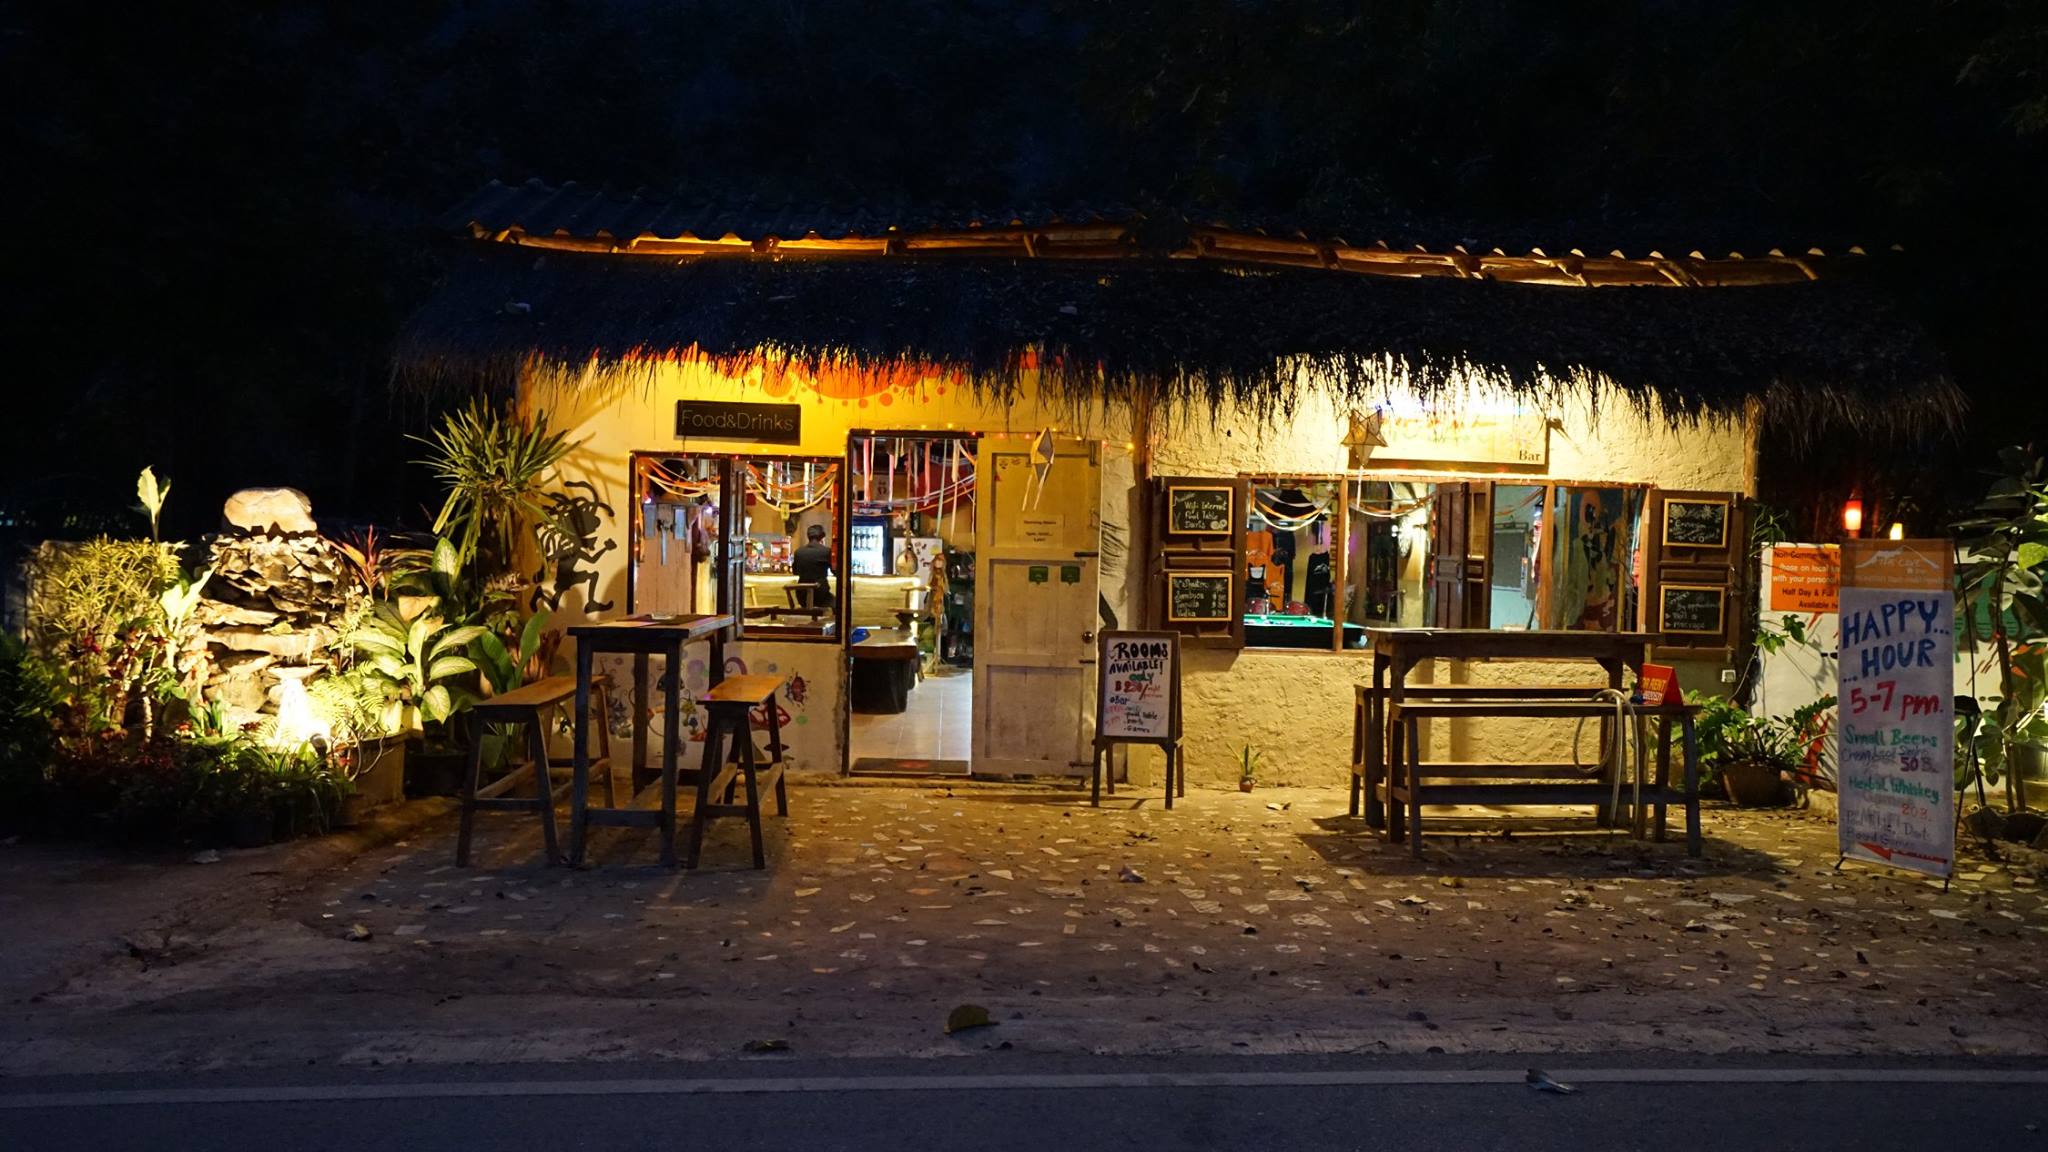 เดอะเคฟผับ (The Cave Bar) : เชียงใหม่ (Chiang Mai)